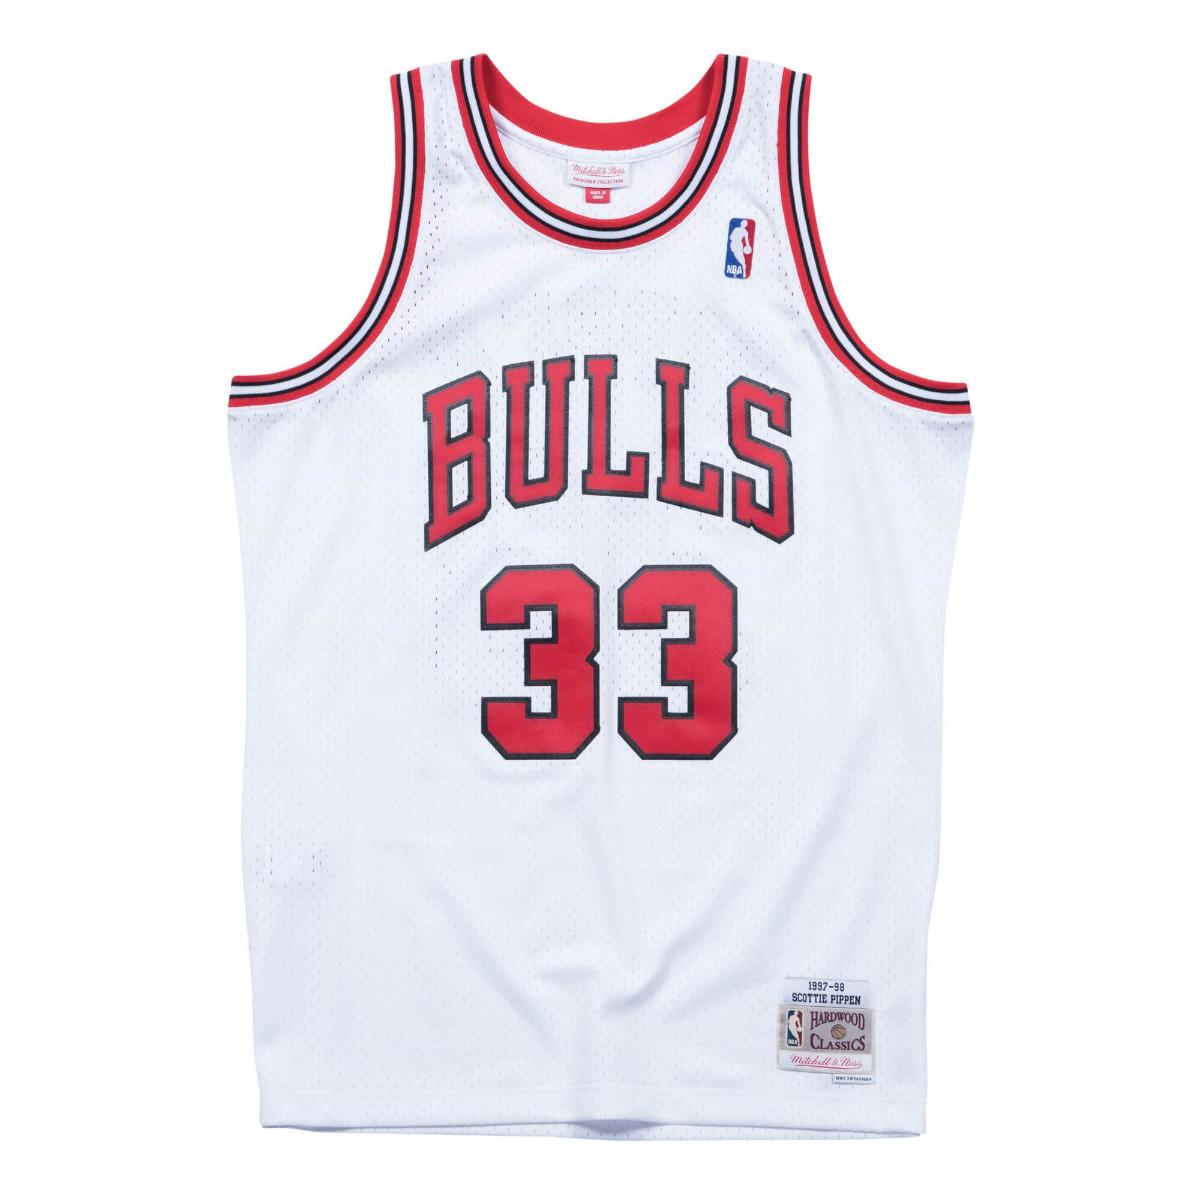 Mitchel&Ness Swingman Jersey Chicago Bulls Home 1997-98 Scottie Pippen(ホワイト)(ミッチェルアンドネス NBA ホーム スイングマンジャージ シカゴ・ブルズ スコッティ・ピッペン)【メンズ】【バスケットボールウェア ユニフォーム レプリカウェア】【23FW】